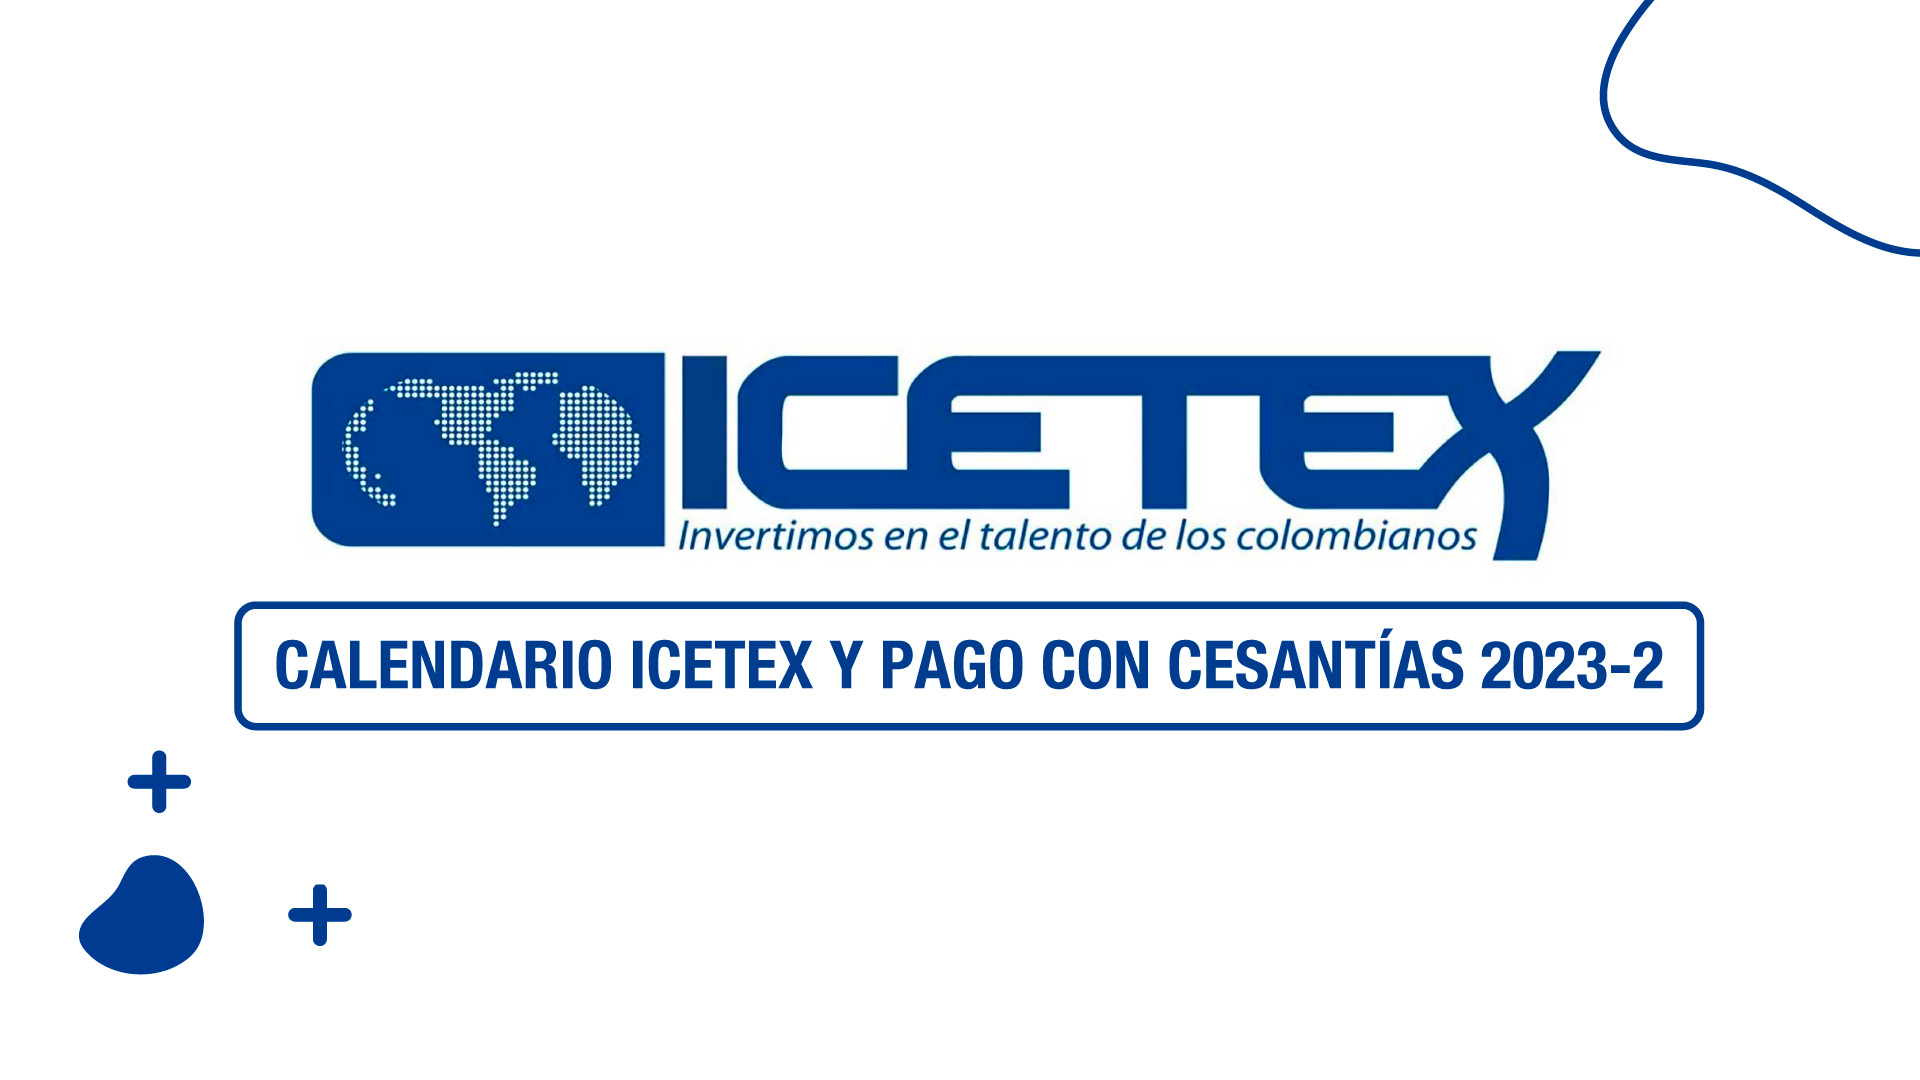 Calendario Icetex y pago con cesantías 2023-2